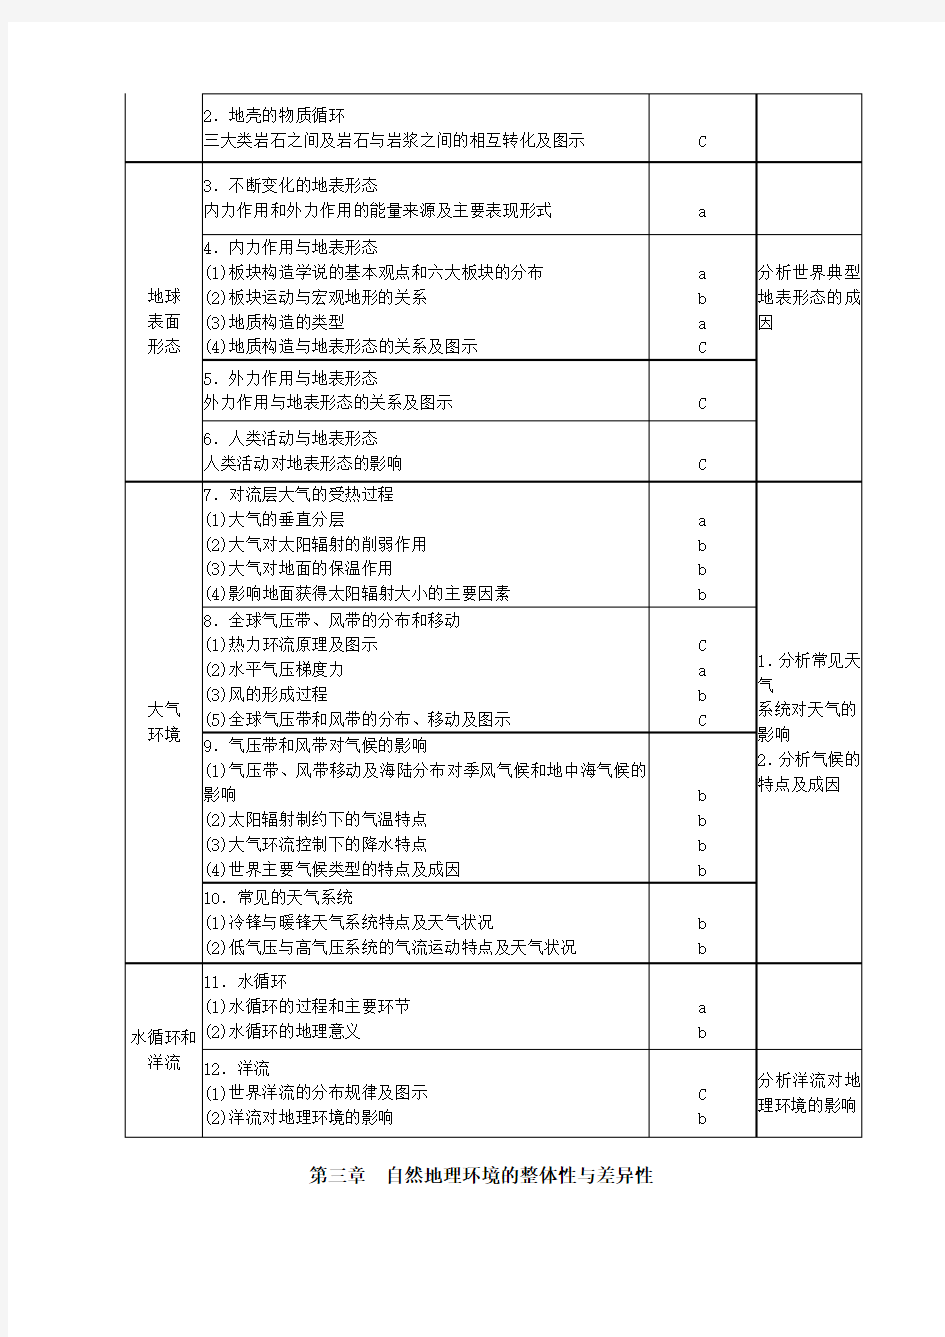 2017浙江地理选考考试内容及要求